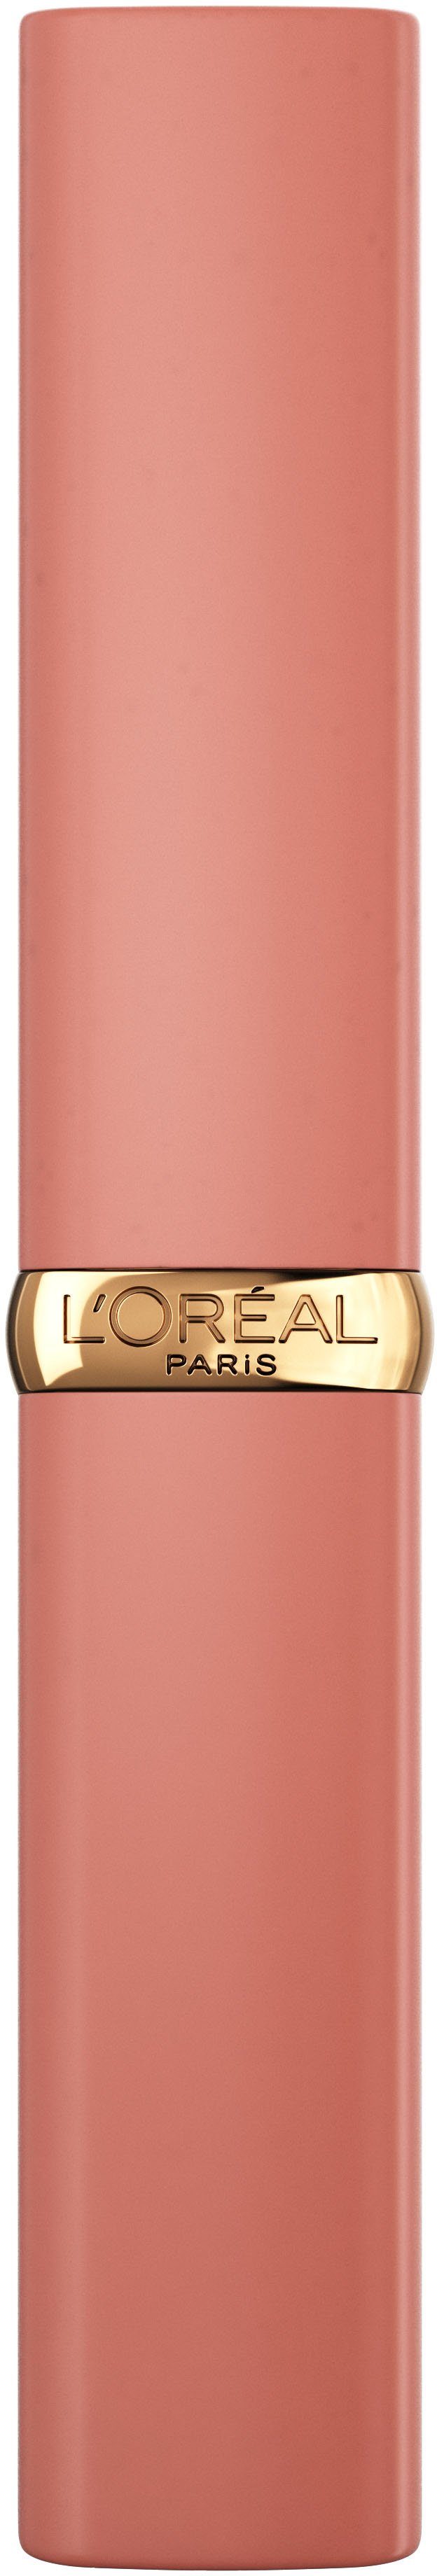 Intense Volume Color PARIS Riche Lippenpflegestift Matte L'ORÉAL